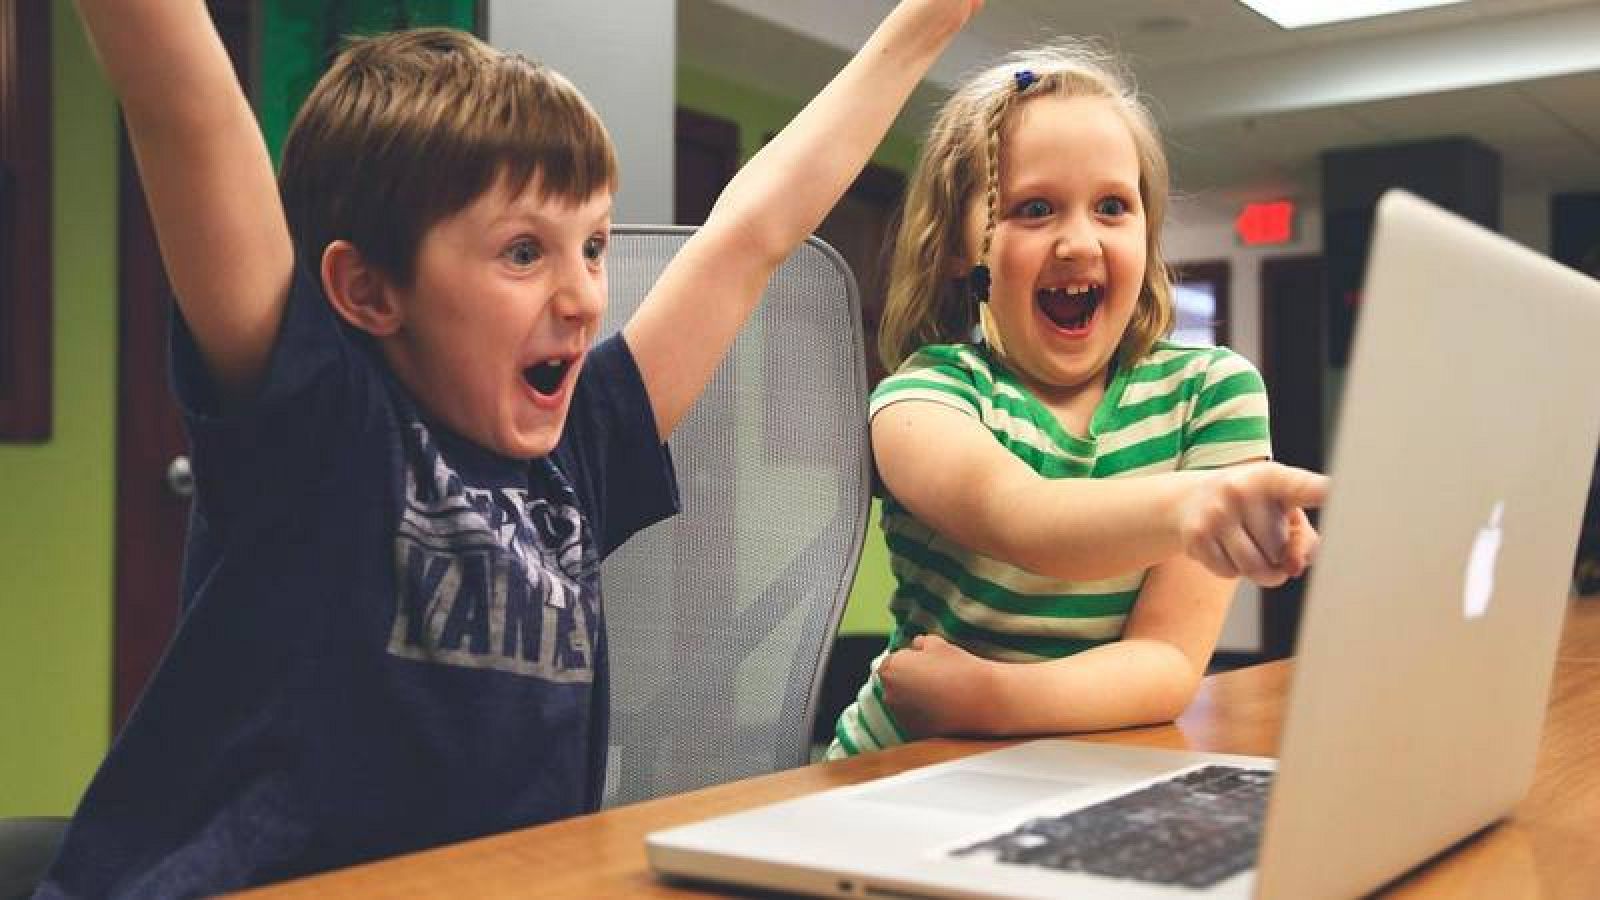 Un niño y una niña hacen gestos de alegría jugando a un videojuego por ordenador